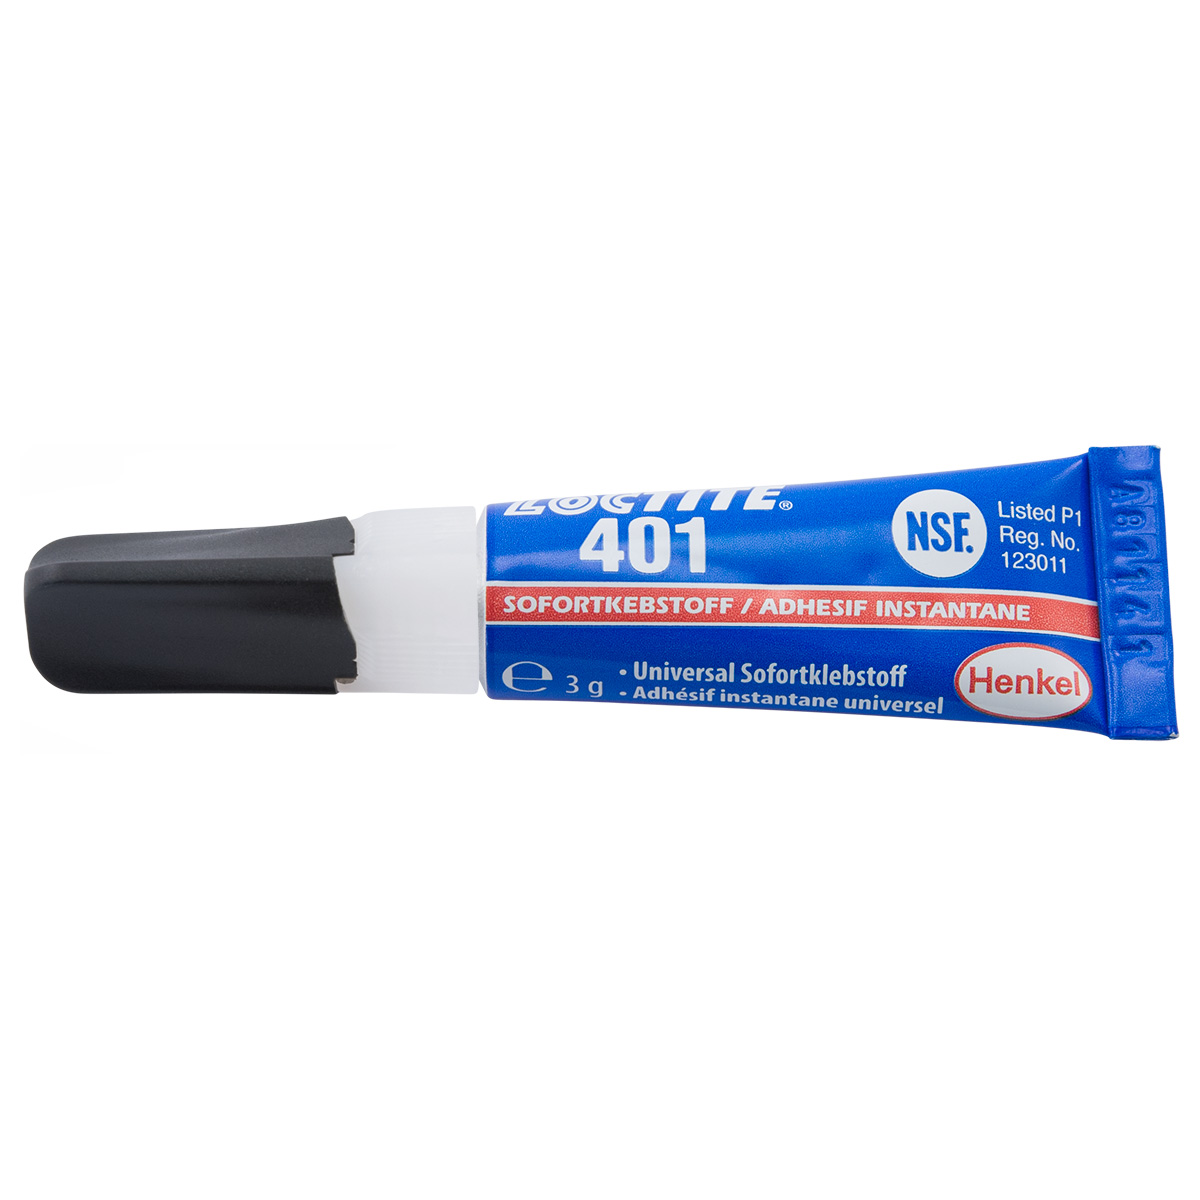 Loctite 401 instant adhesive, 3 g